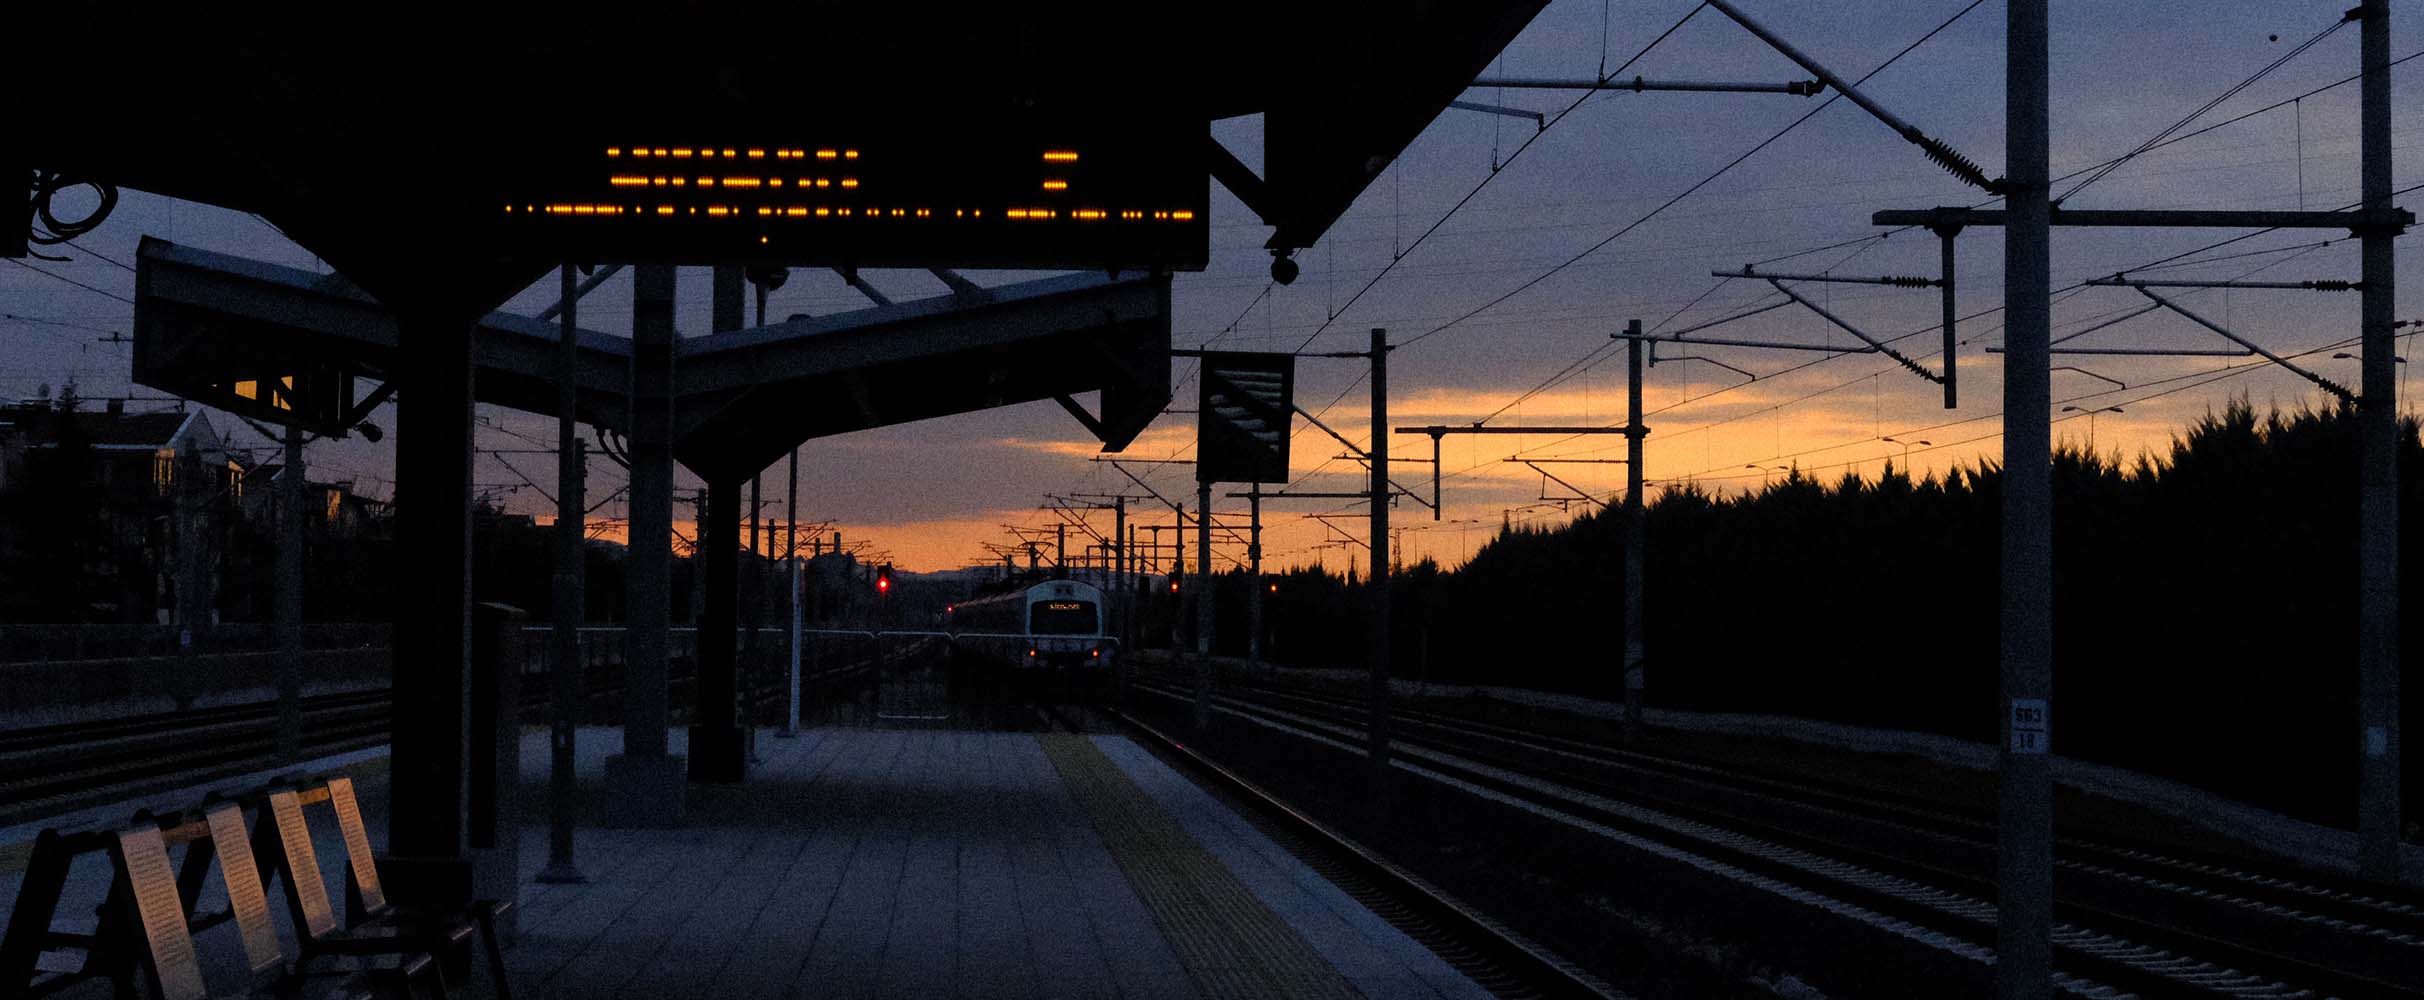 Auf nach Berlin: vertrekdatum eerste nachttrein tussen Amsterdam en Berlijn is bekend